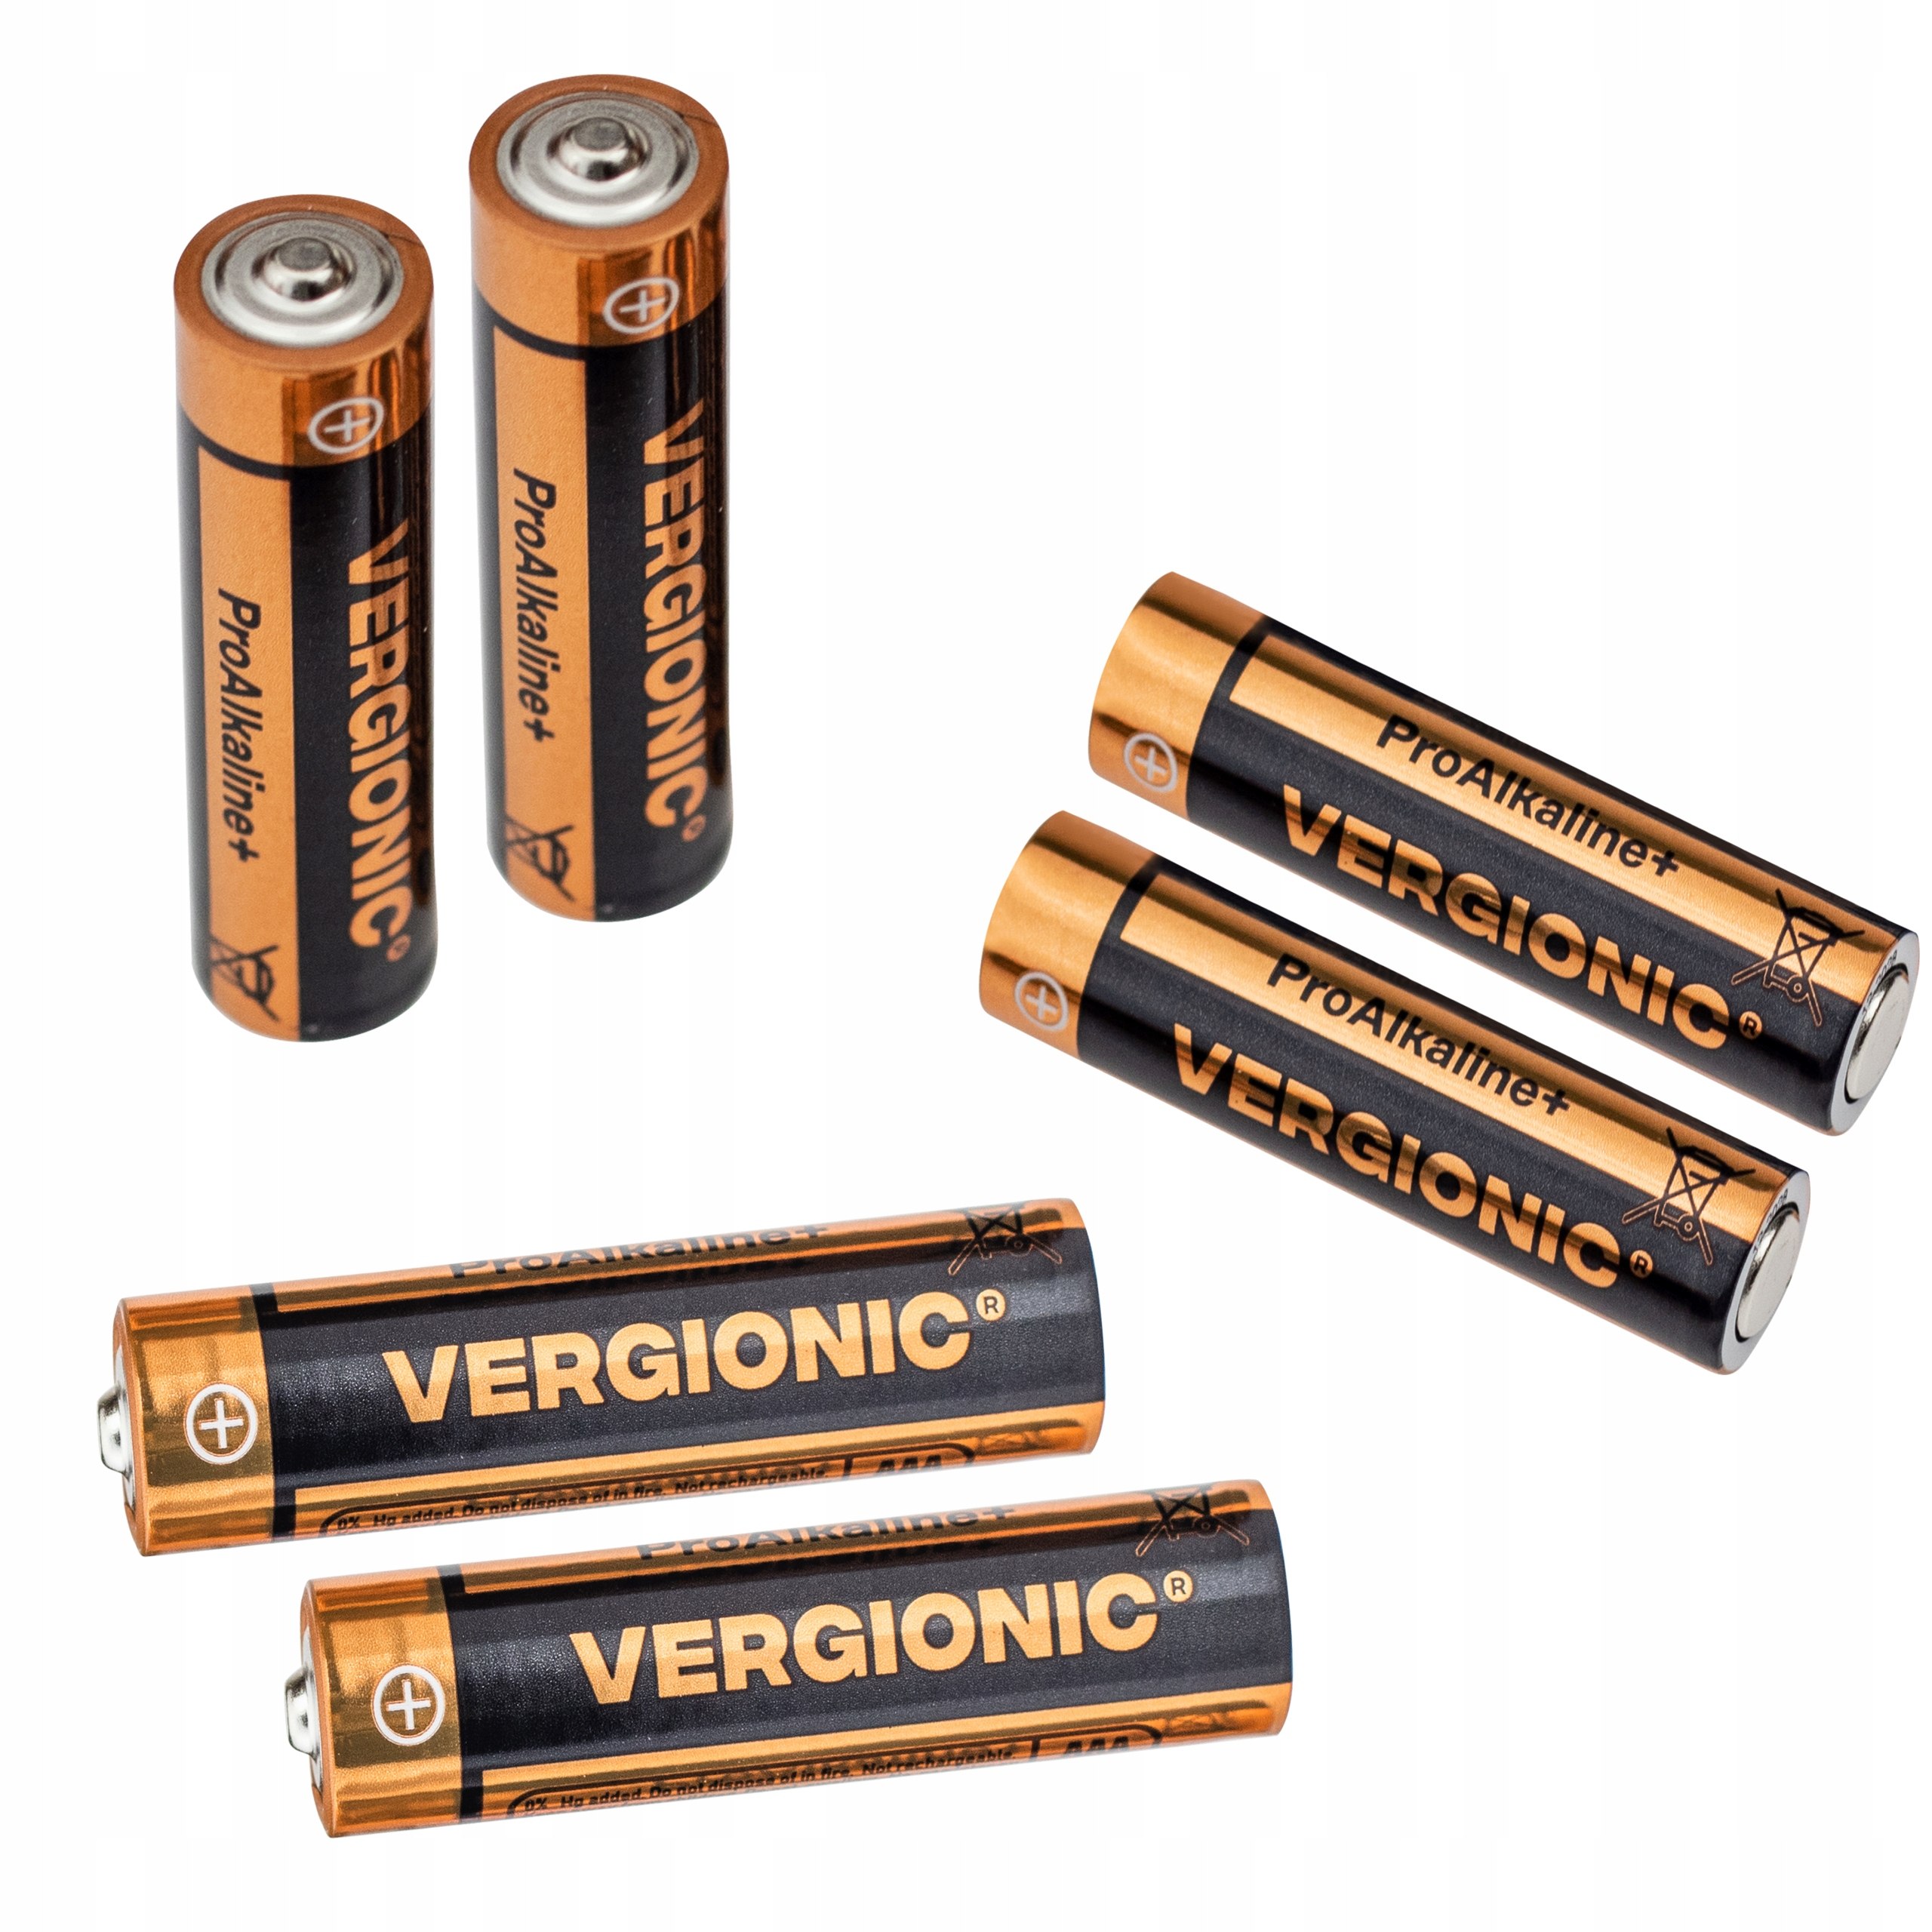 Baterie alkaliczne 6 szt. AA R6 VERGIONIC EAN 5904238410974